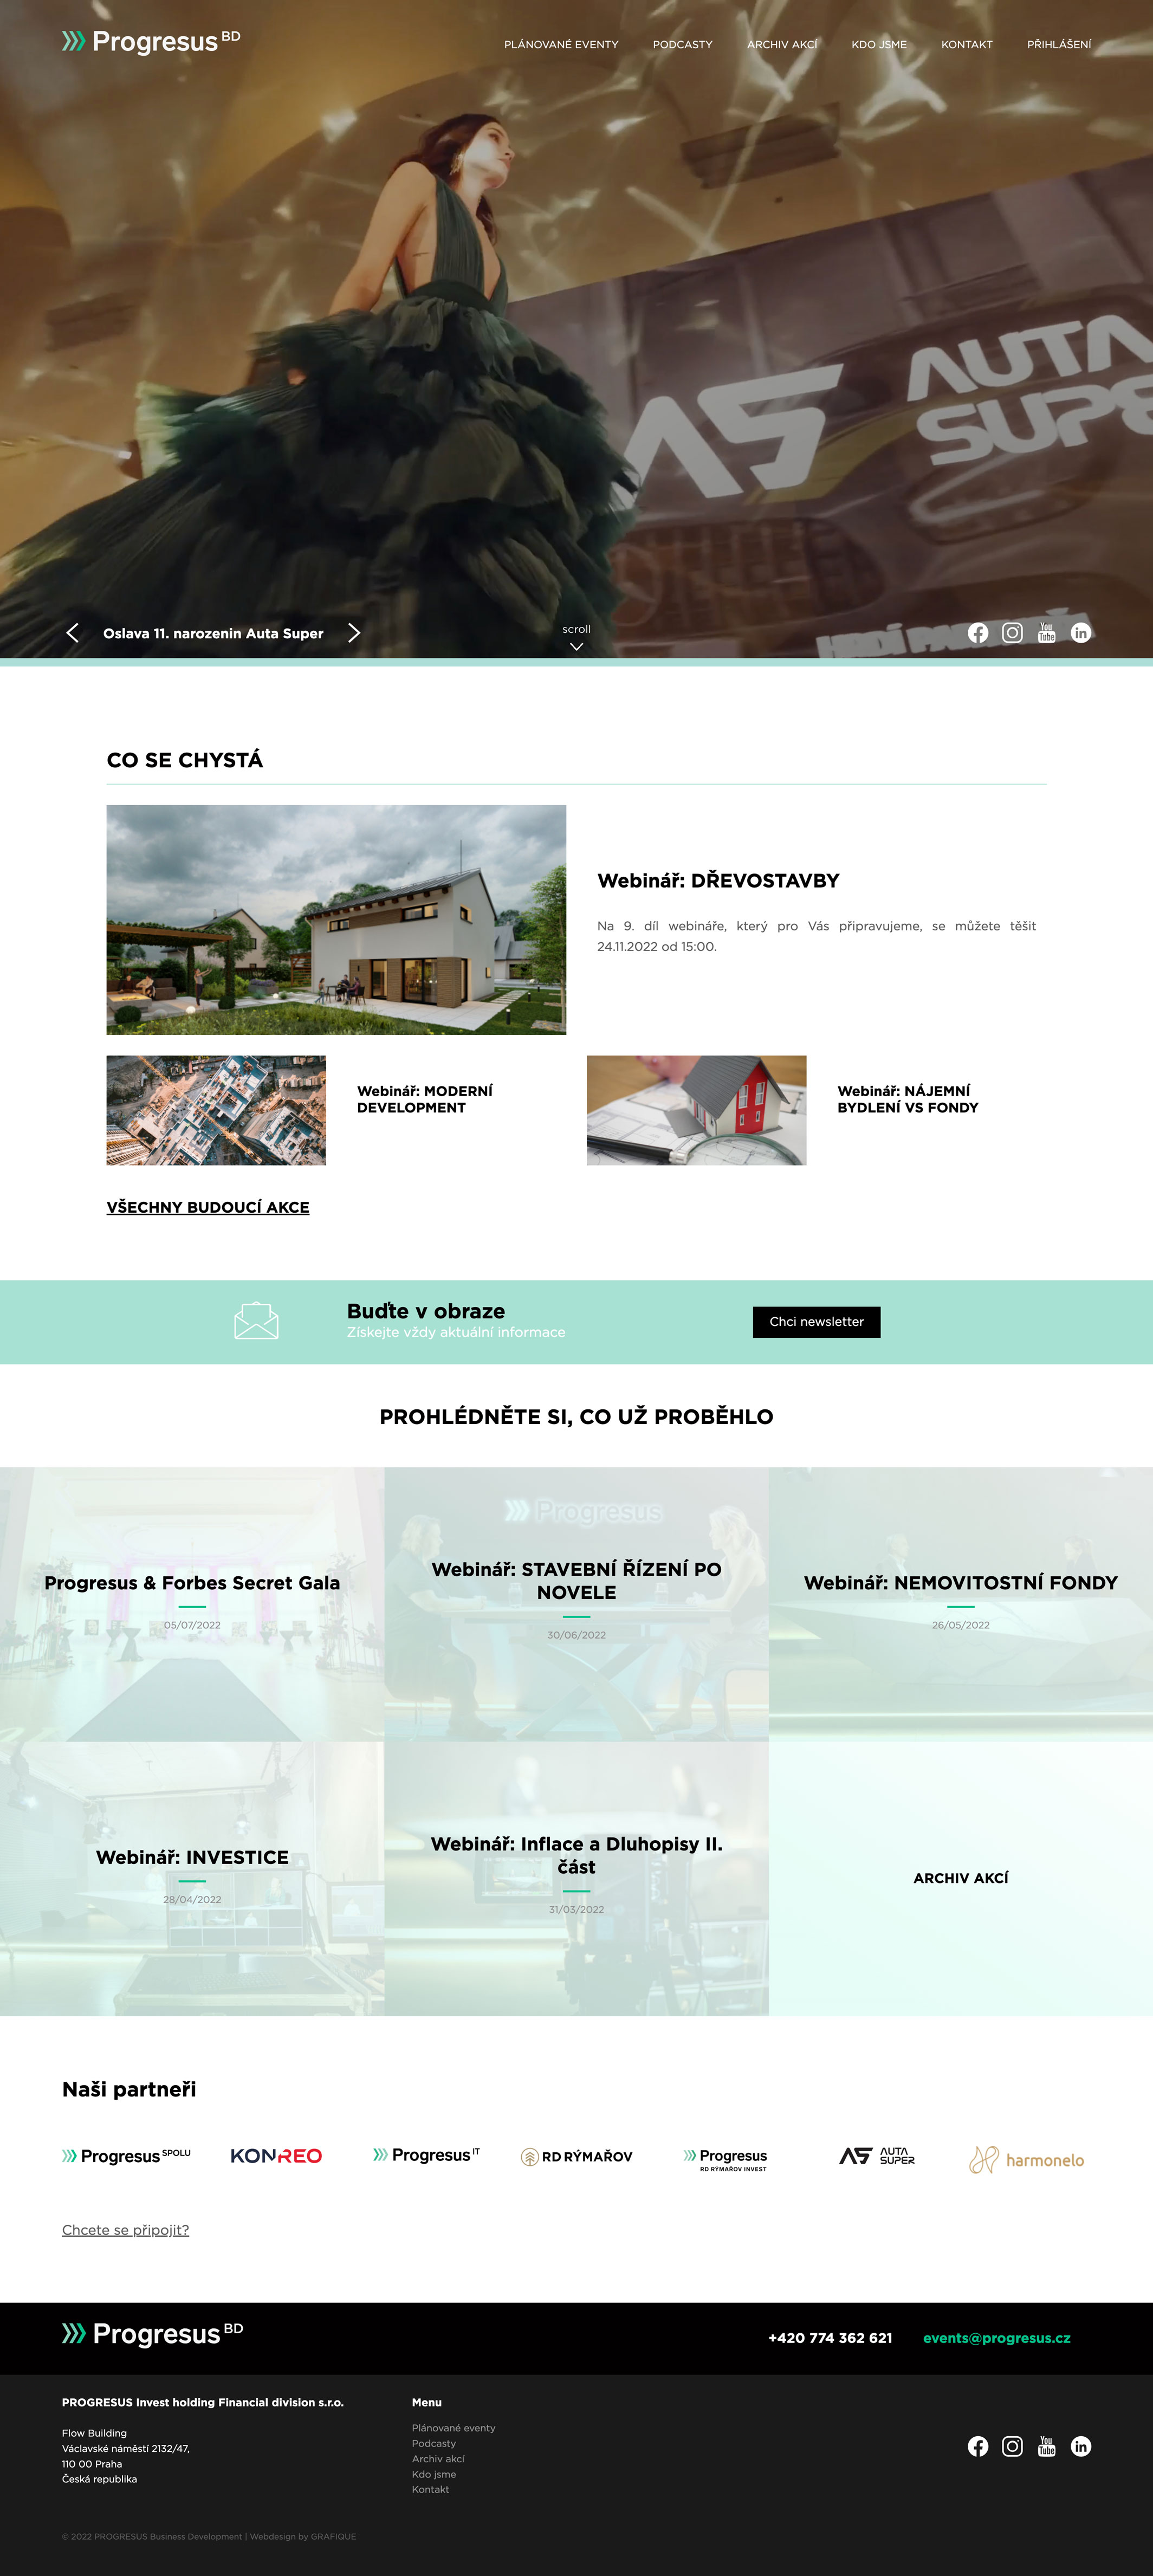 PROGRESUS Business Development - tvorba www stránek, Webdesign